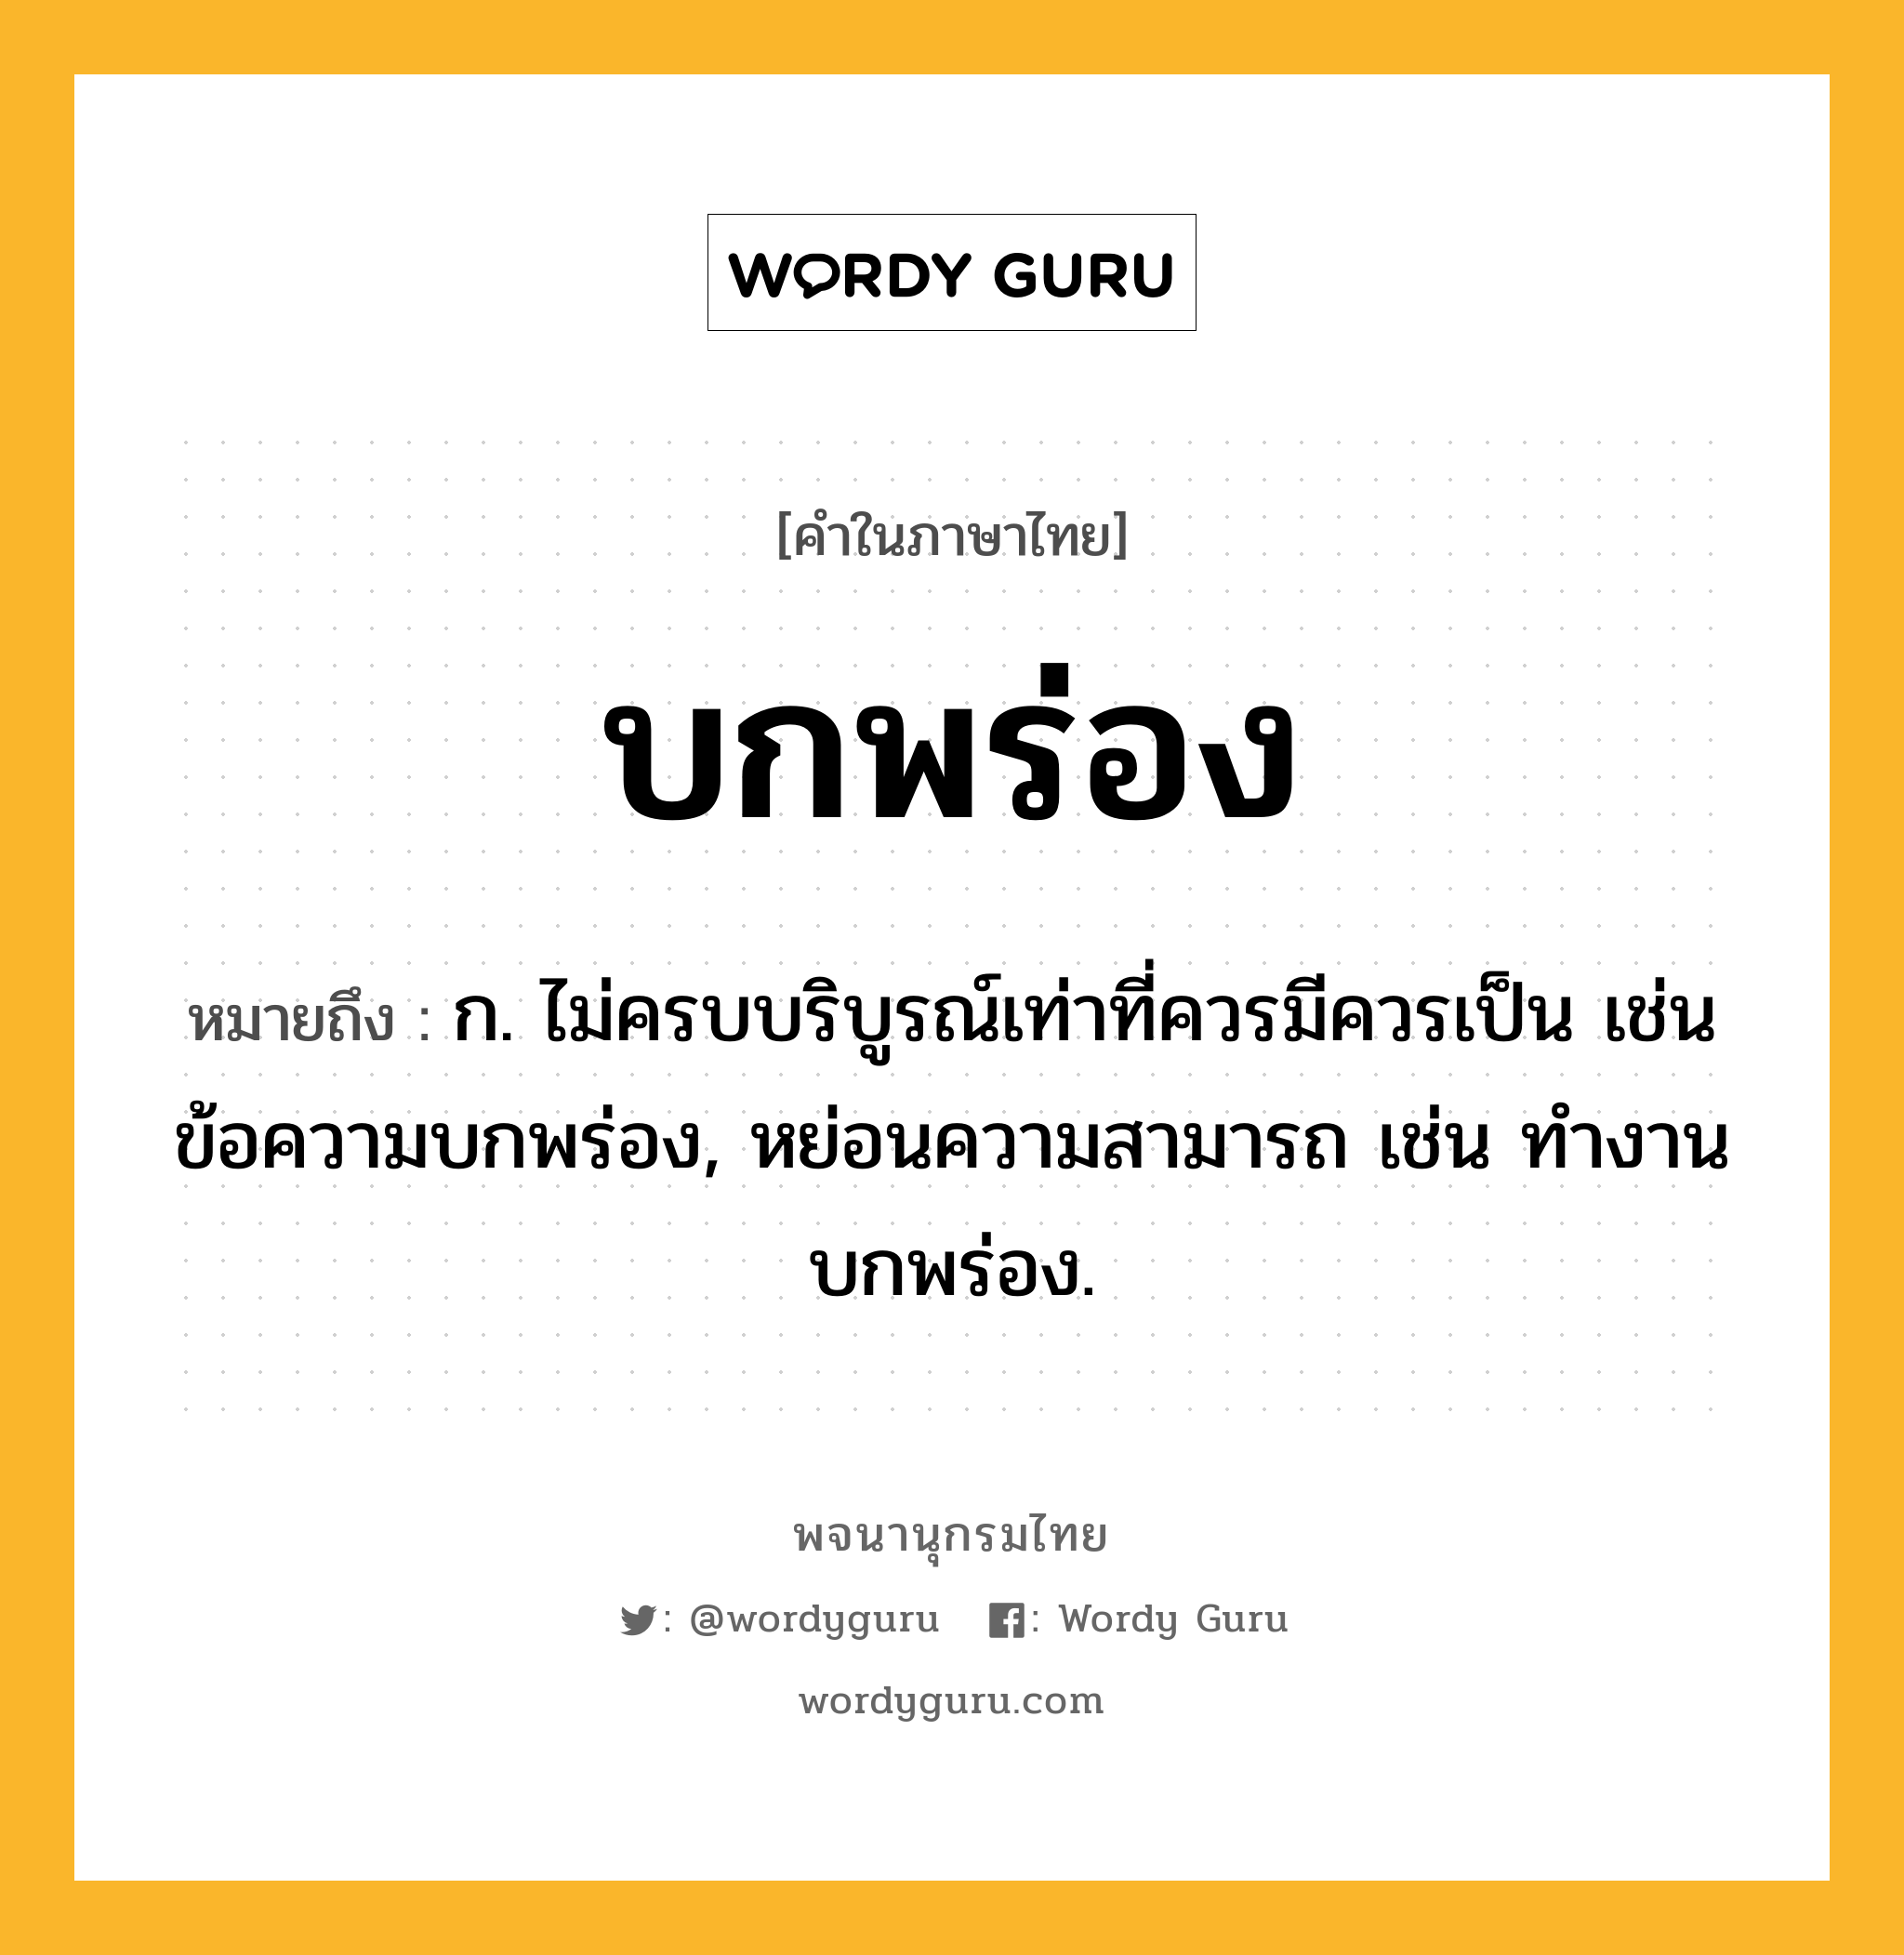 บกพร่อง ความหมาย หมายถึงอะไร?, คำในภาษาไทย บกพร่อง หมายถึง ก. ไม่ครบบริบูรณ์เท่าที่ควรมีควรเป็น เช่น ข้อความบกพร่อง, หย่อนความสามารถ เช่น ทํางานบกพร่อง.